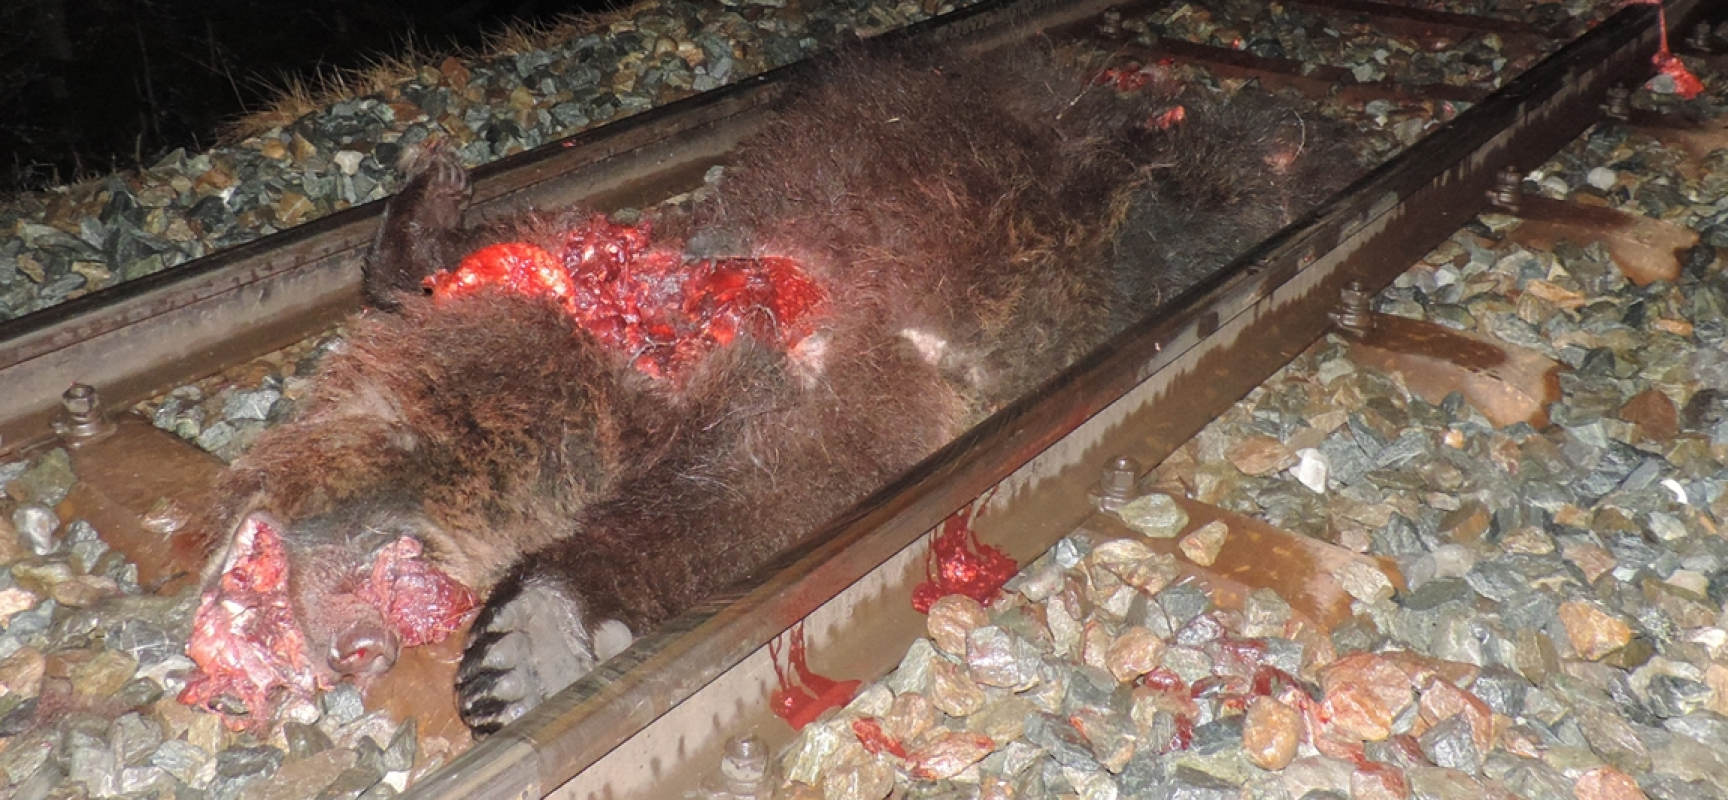 Bär von Zug erfaßt und getötet